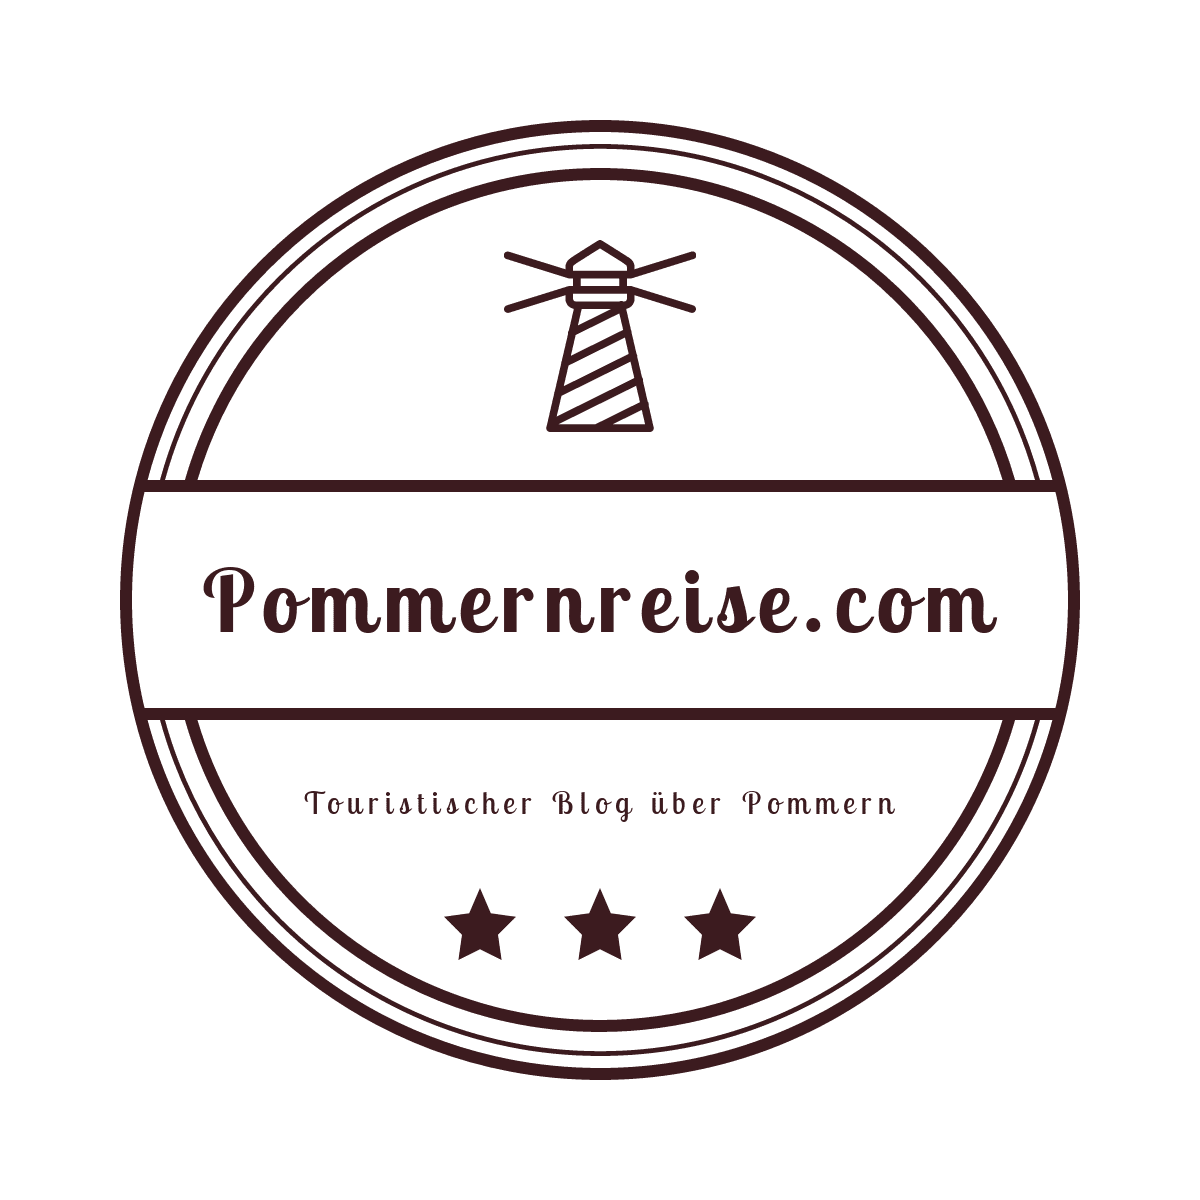 www.pommernreise.com